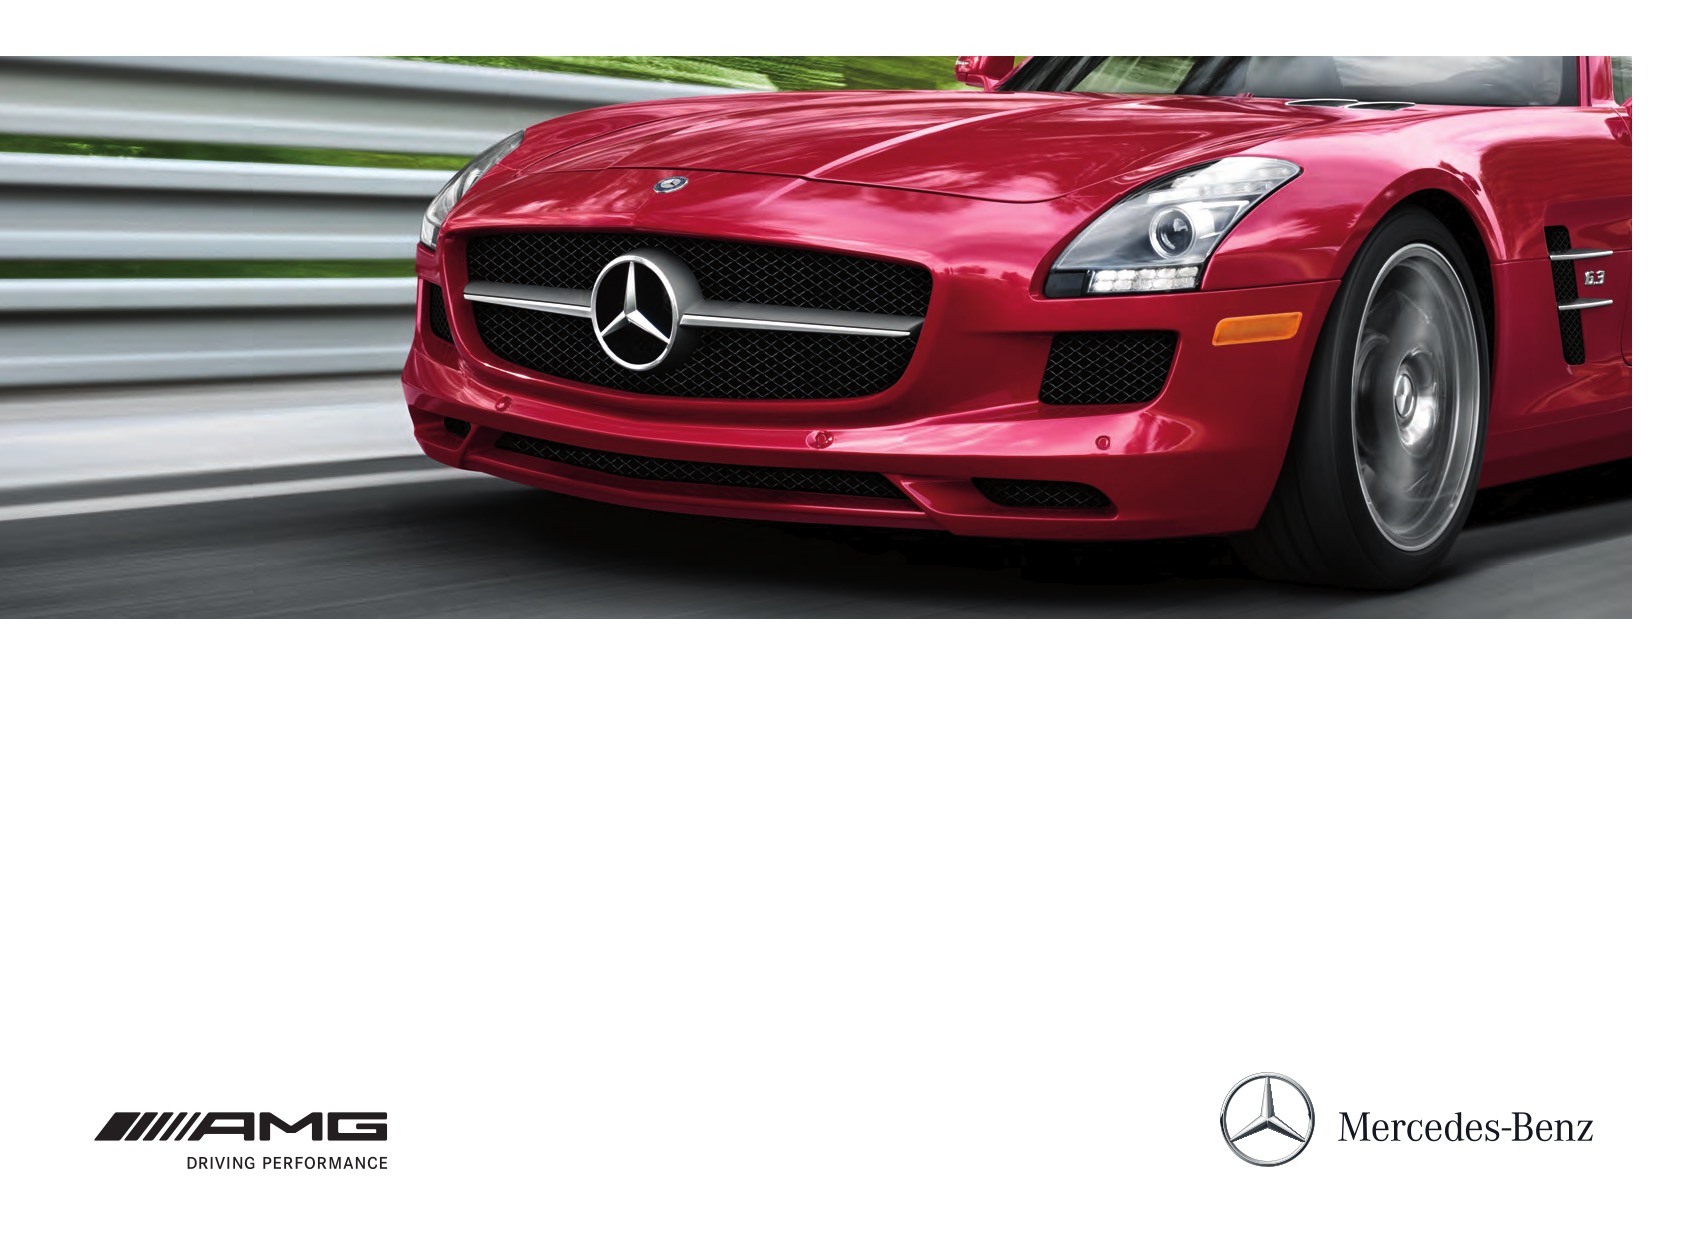 2012 Mercedes-Benz AMG Brochure